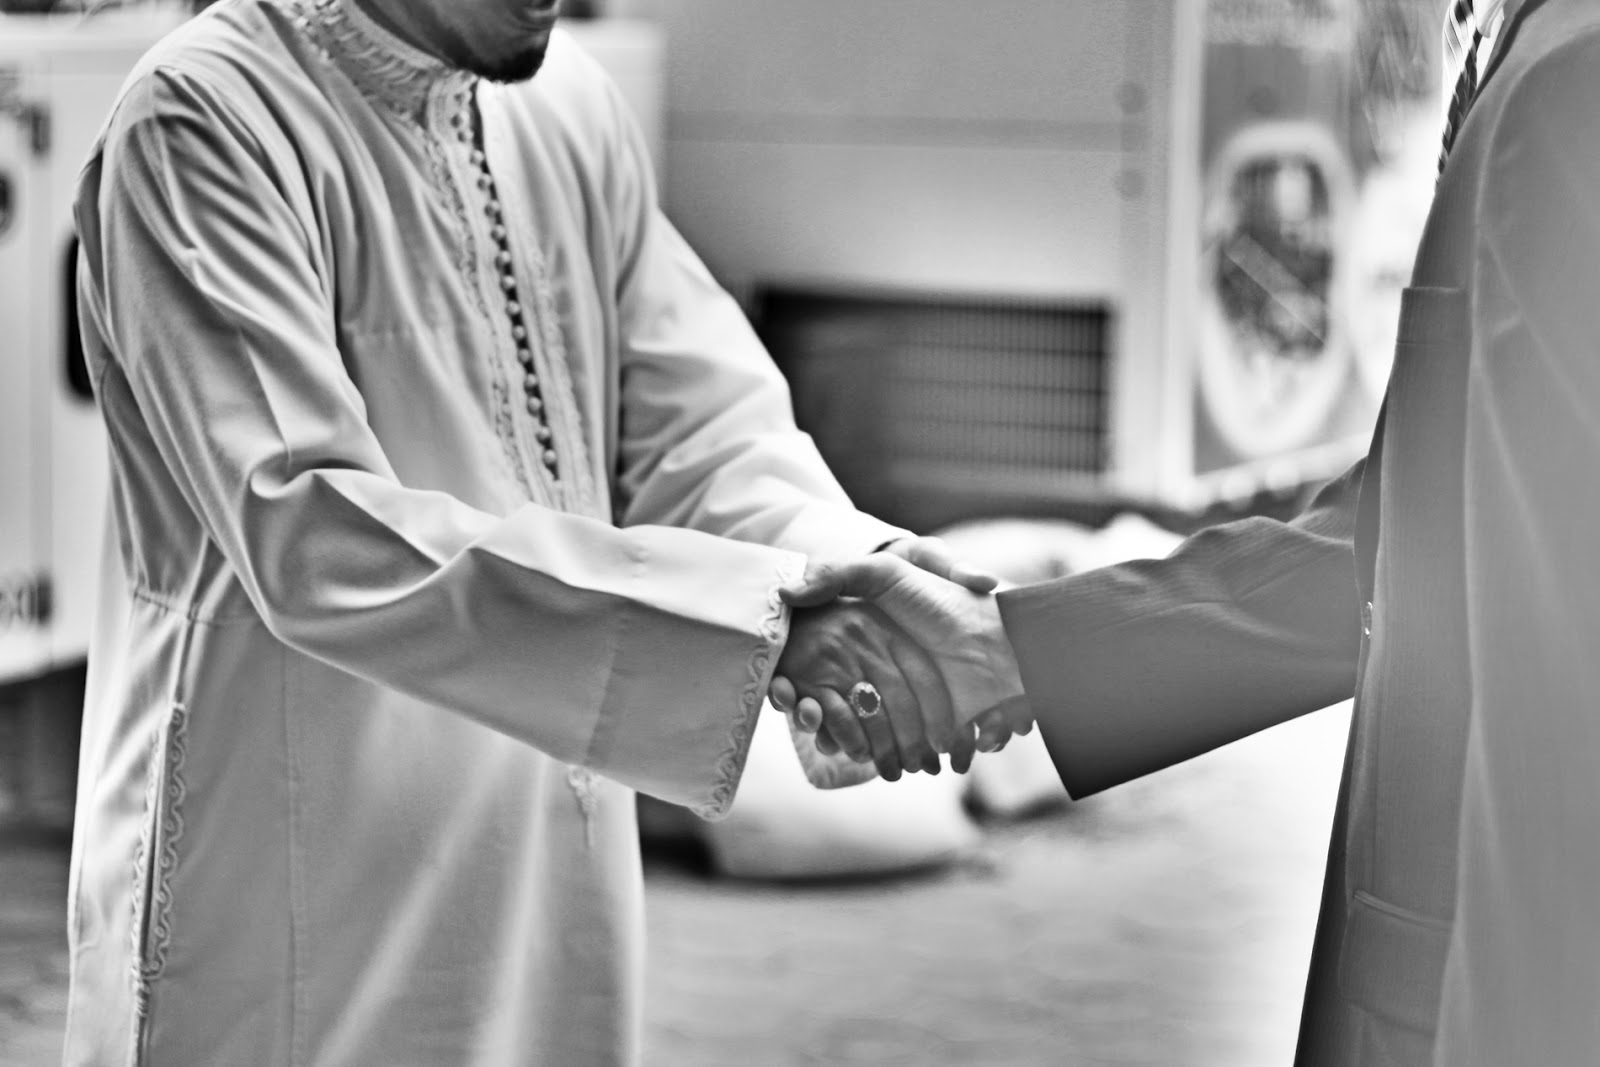 Los primeros pasos como nuevo musulmán son muy importantes. Estos tres consejos prácticos te ayudarán en esta etapa.